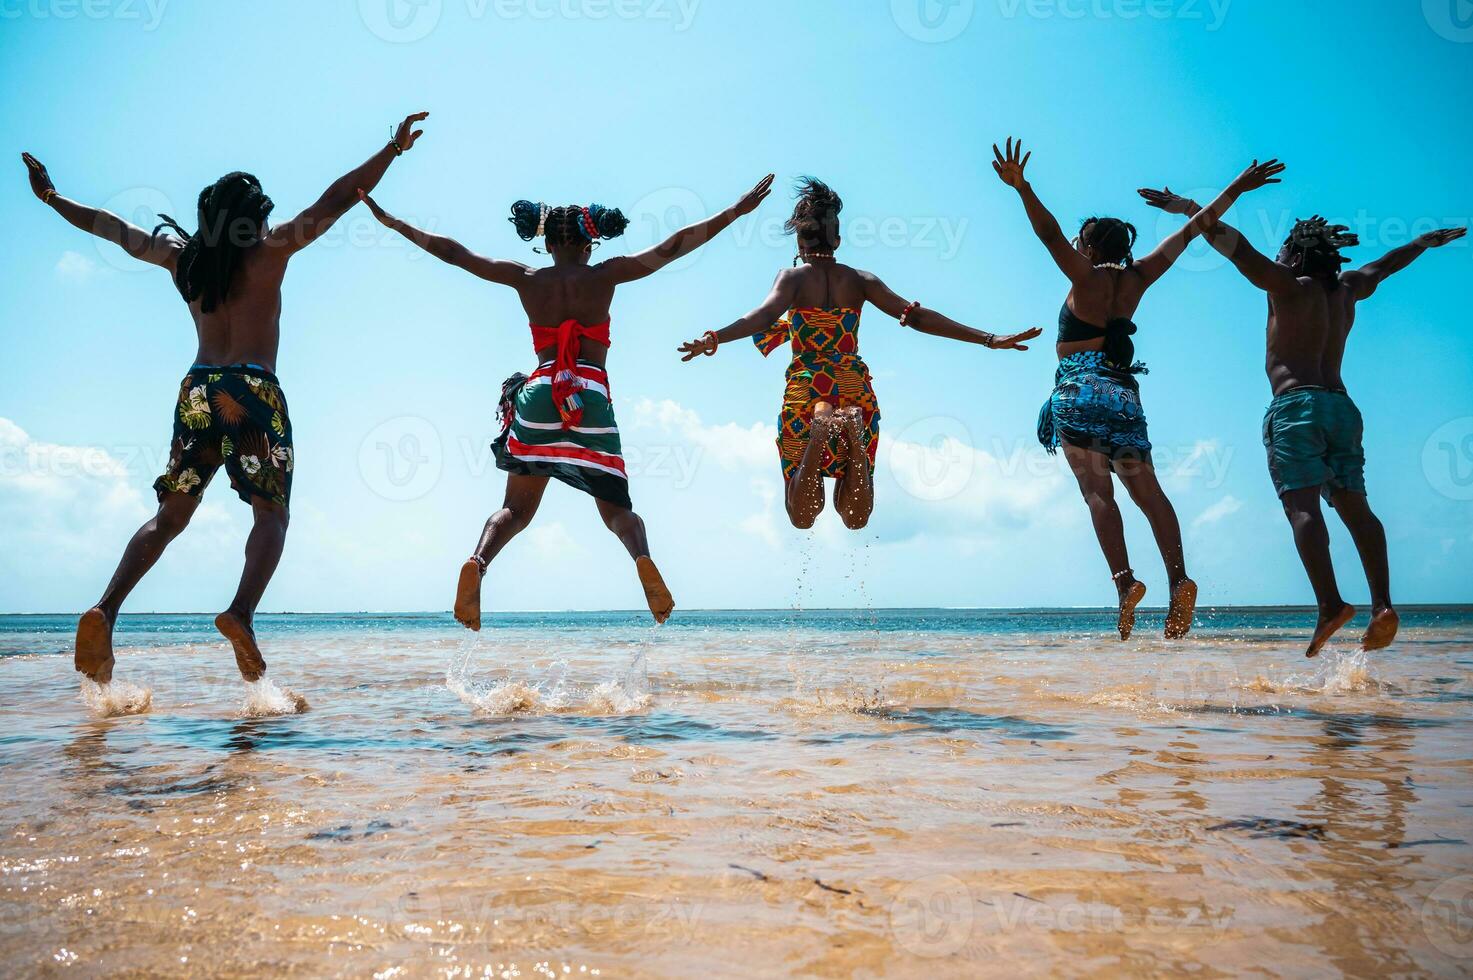 kenyan gens sauter sur le plage avec typique local vêtements photo